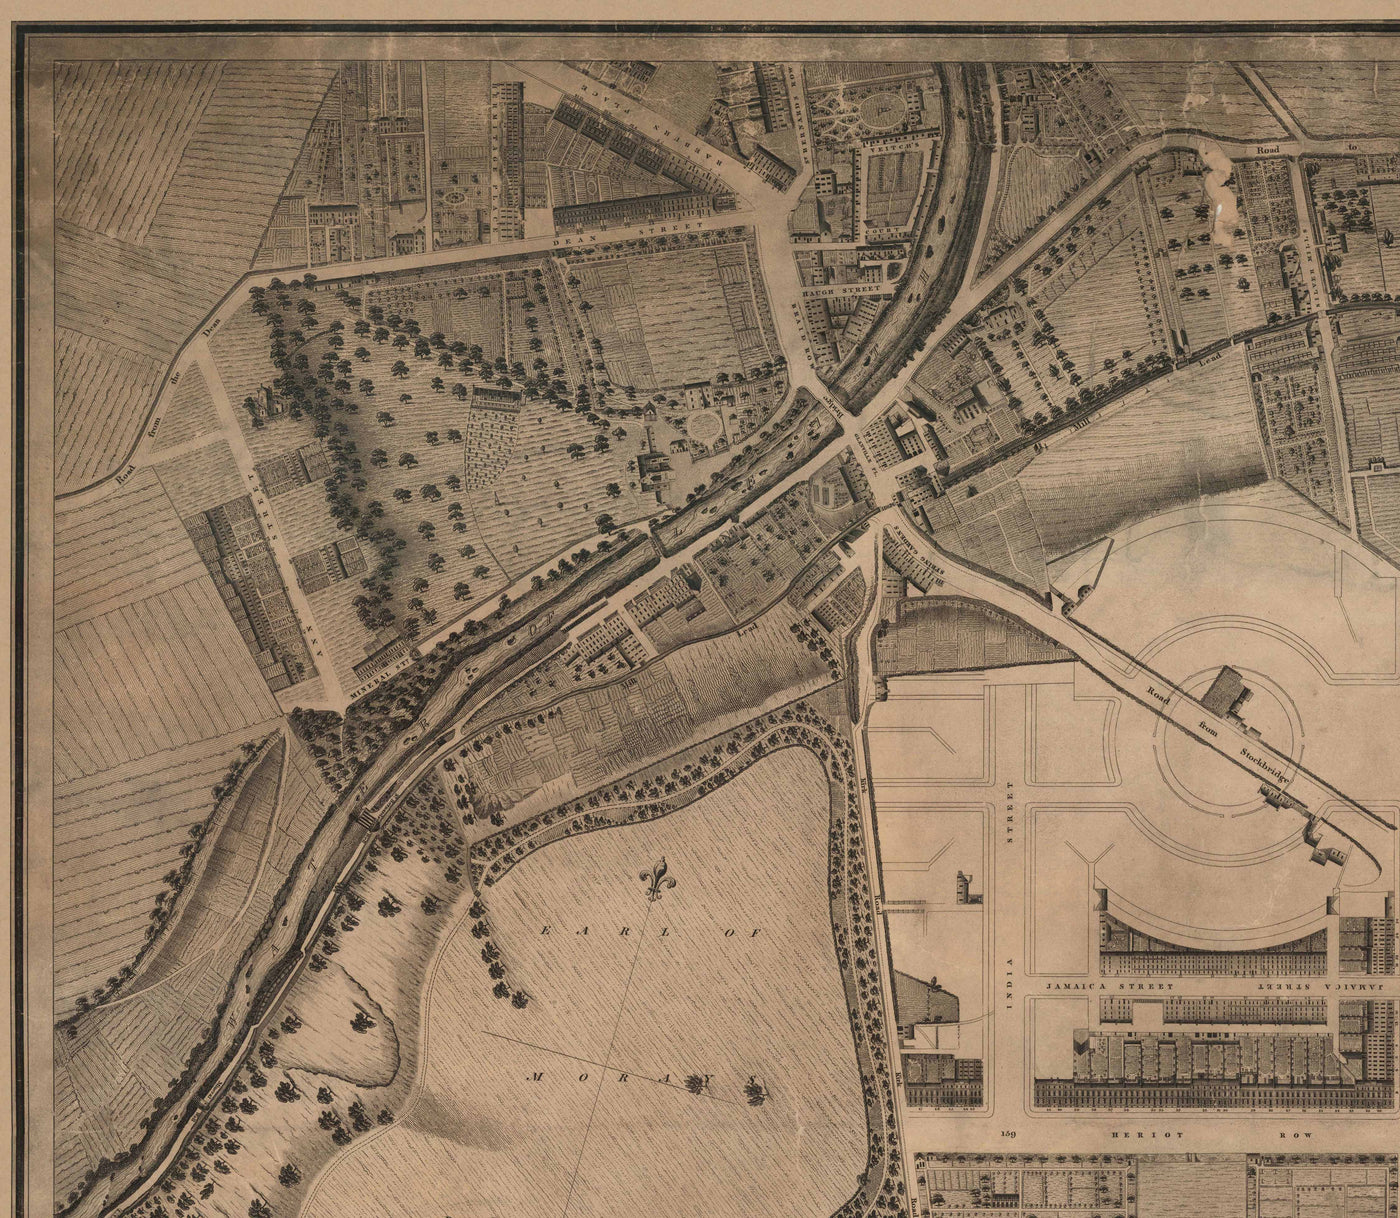 Alte Karte von New Town, Edinburgh im Jahr 1821 von James Kirkwood - Calton Hill, Queen Street, York Place, Prince Street, Great King Street